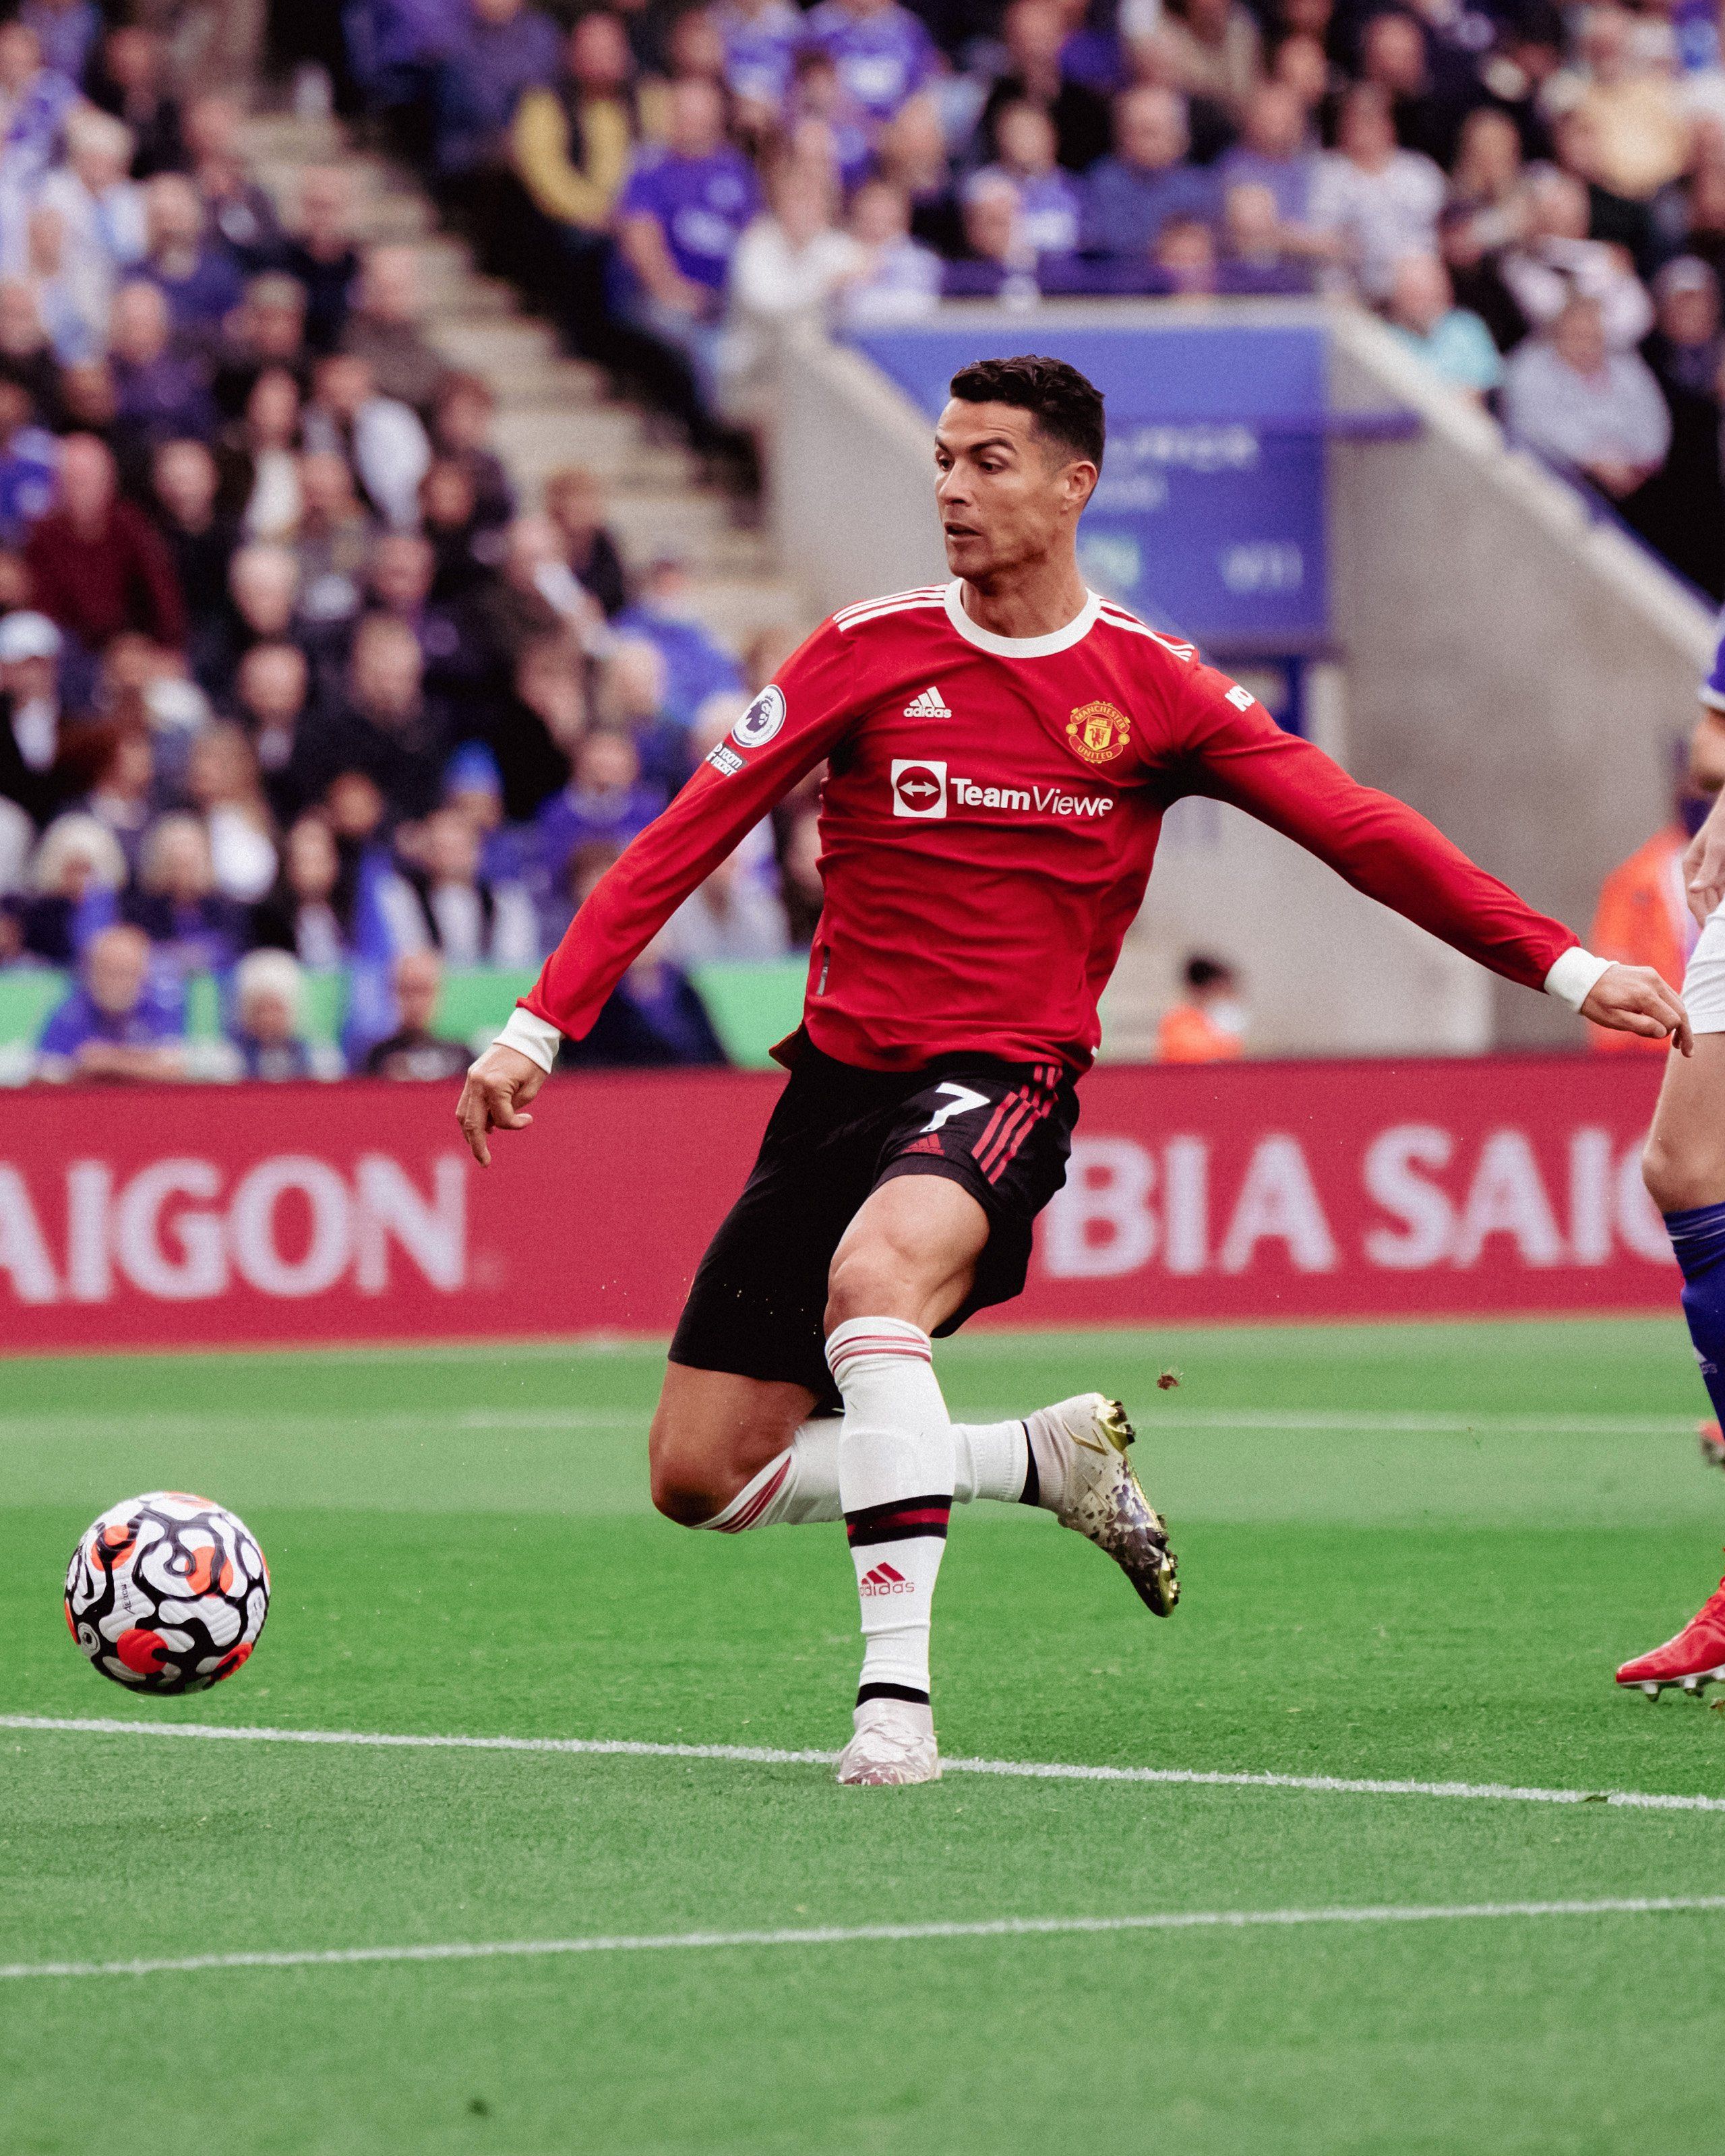 Crisiano Ronaldo - Manchester United